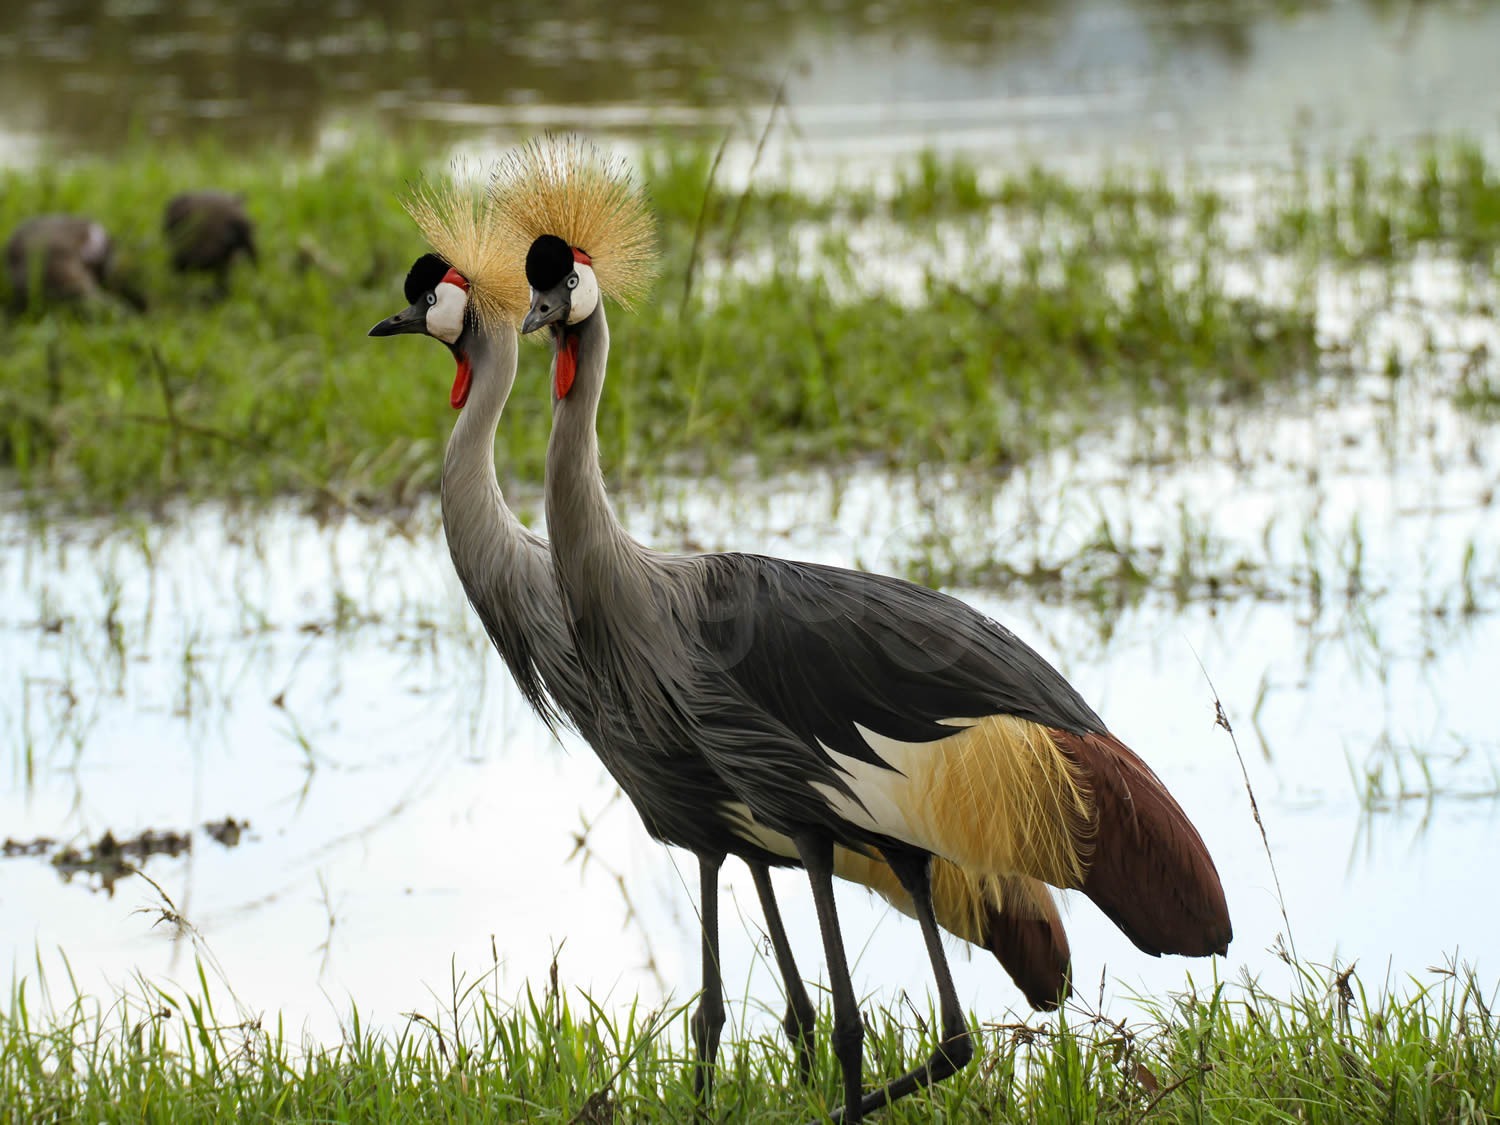 Creasted Cranes | Maasai Mara Game Reserve